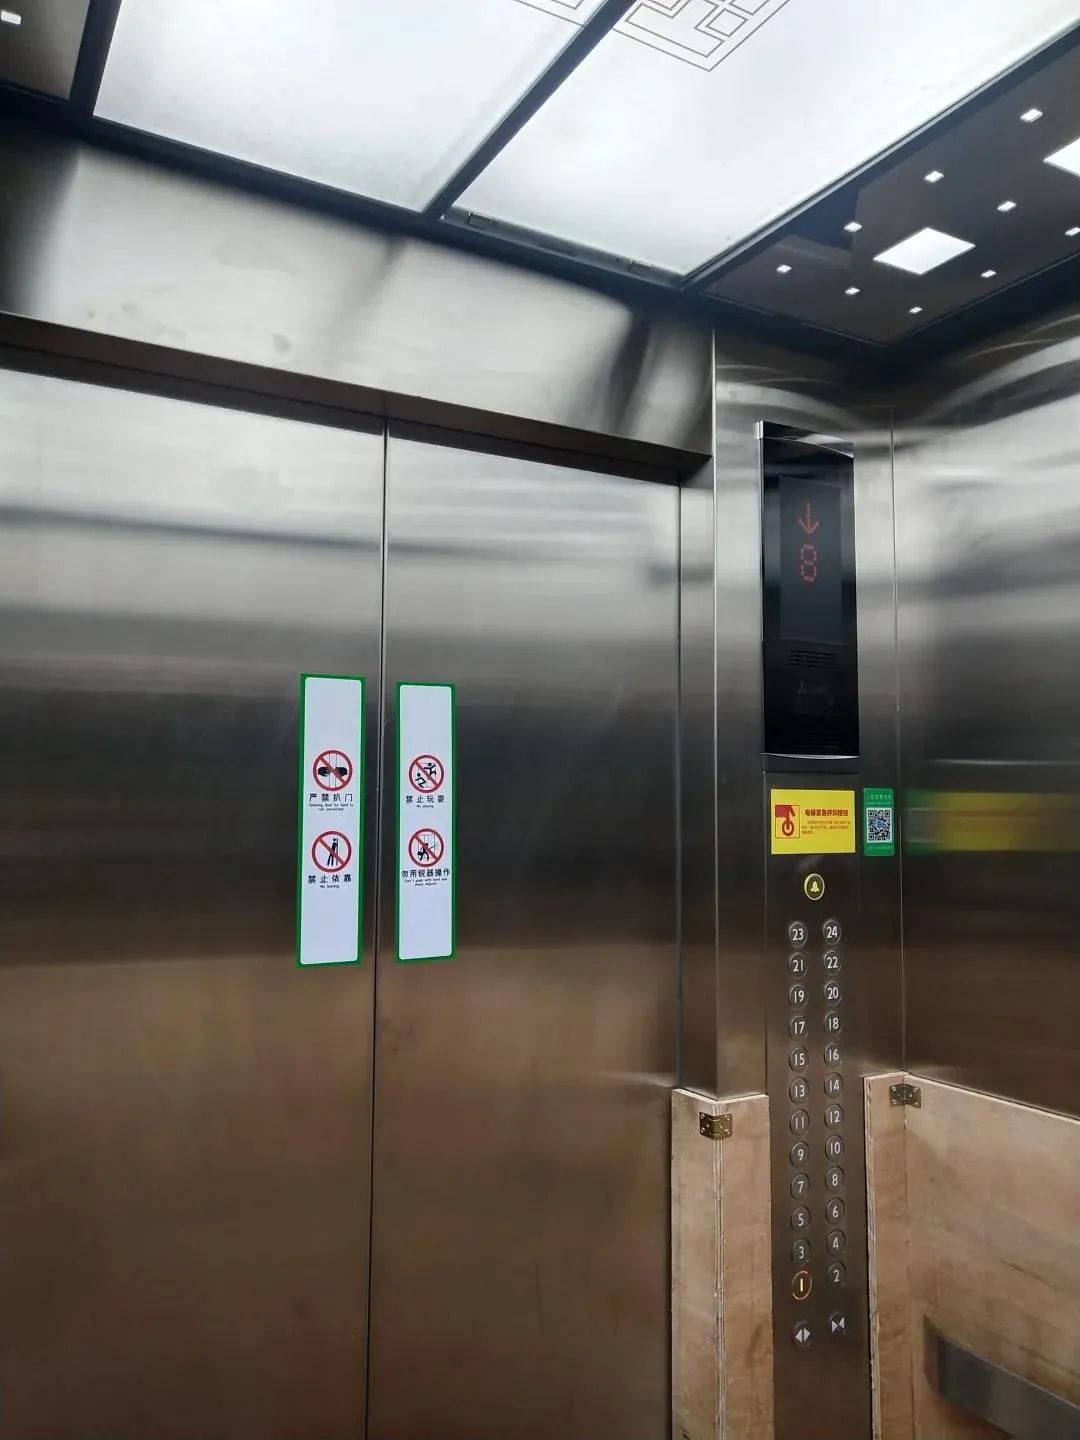 超龄电梯如何更换这个居民区的做法值得借鉴